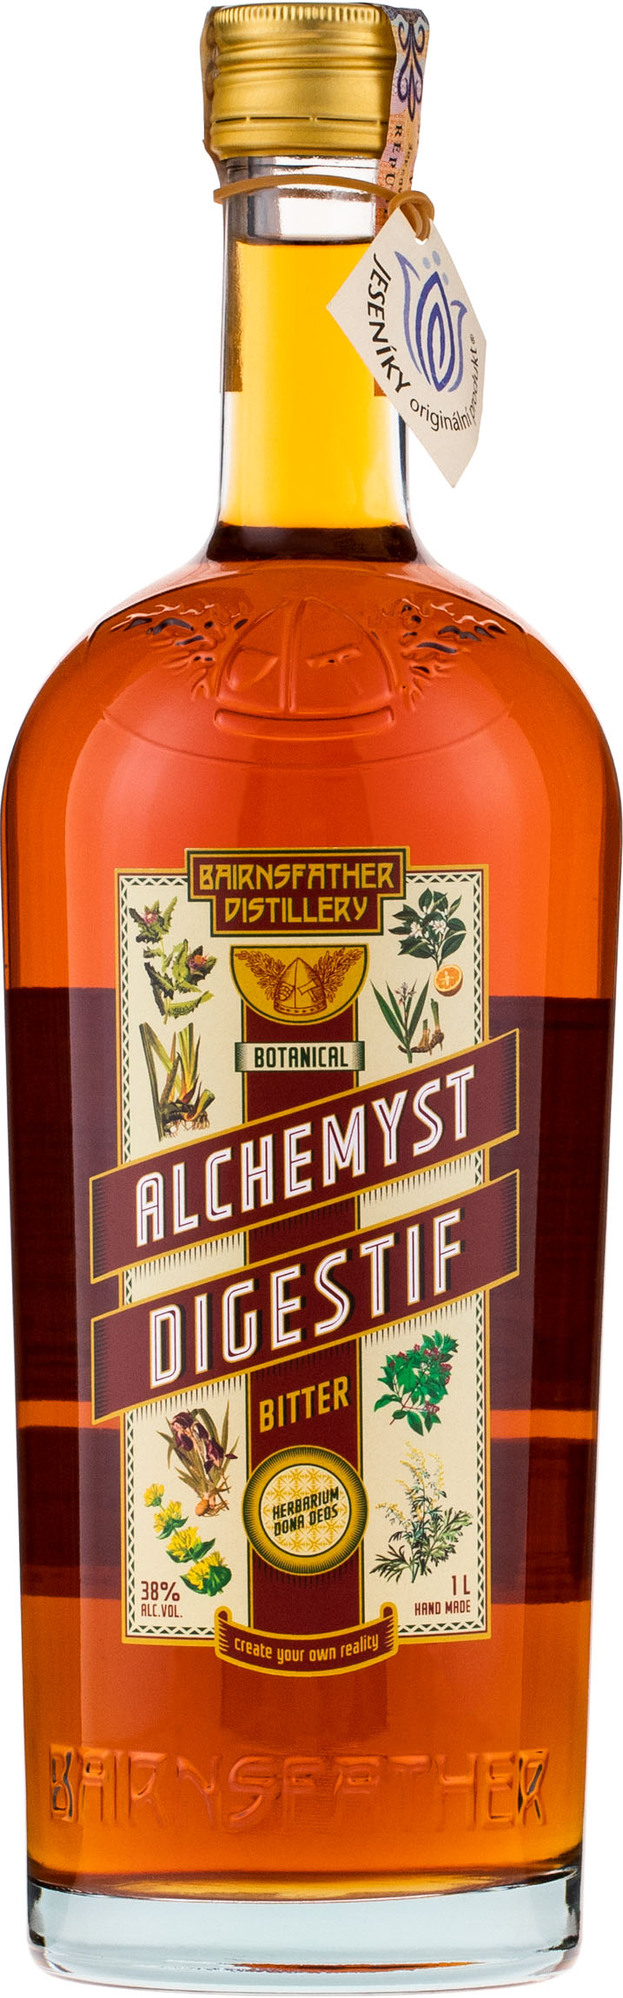 Bairnsfather Alchemyst Digestif 1l 38%